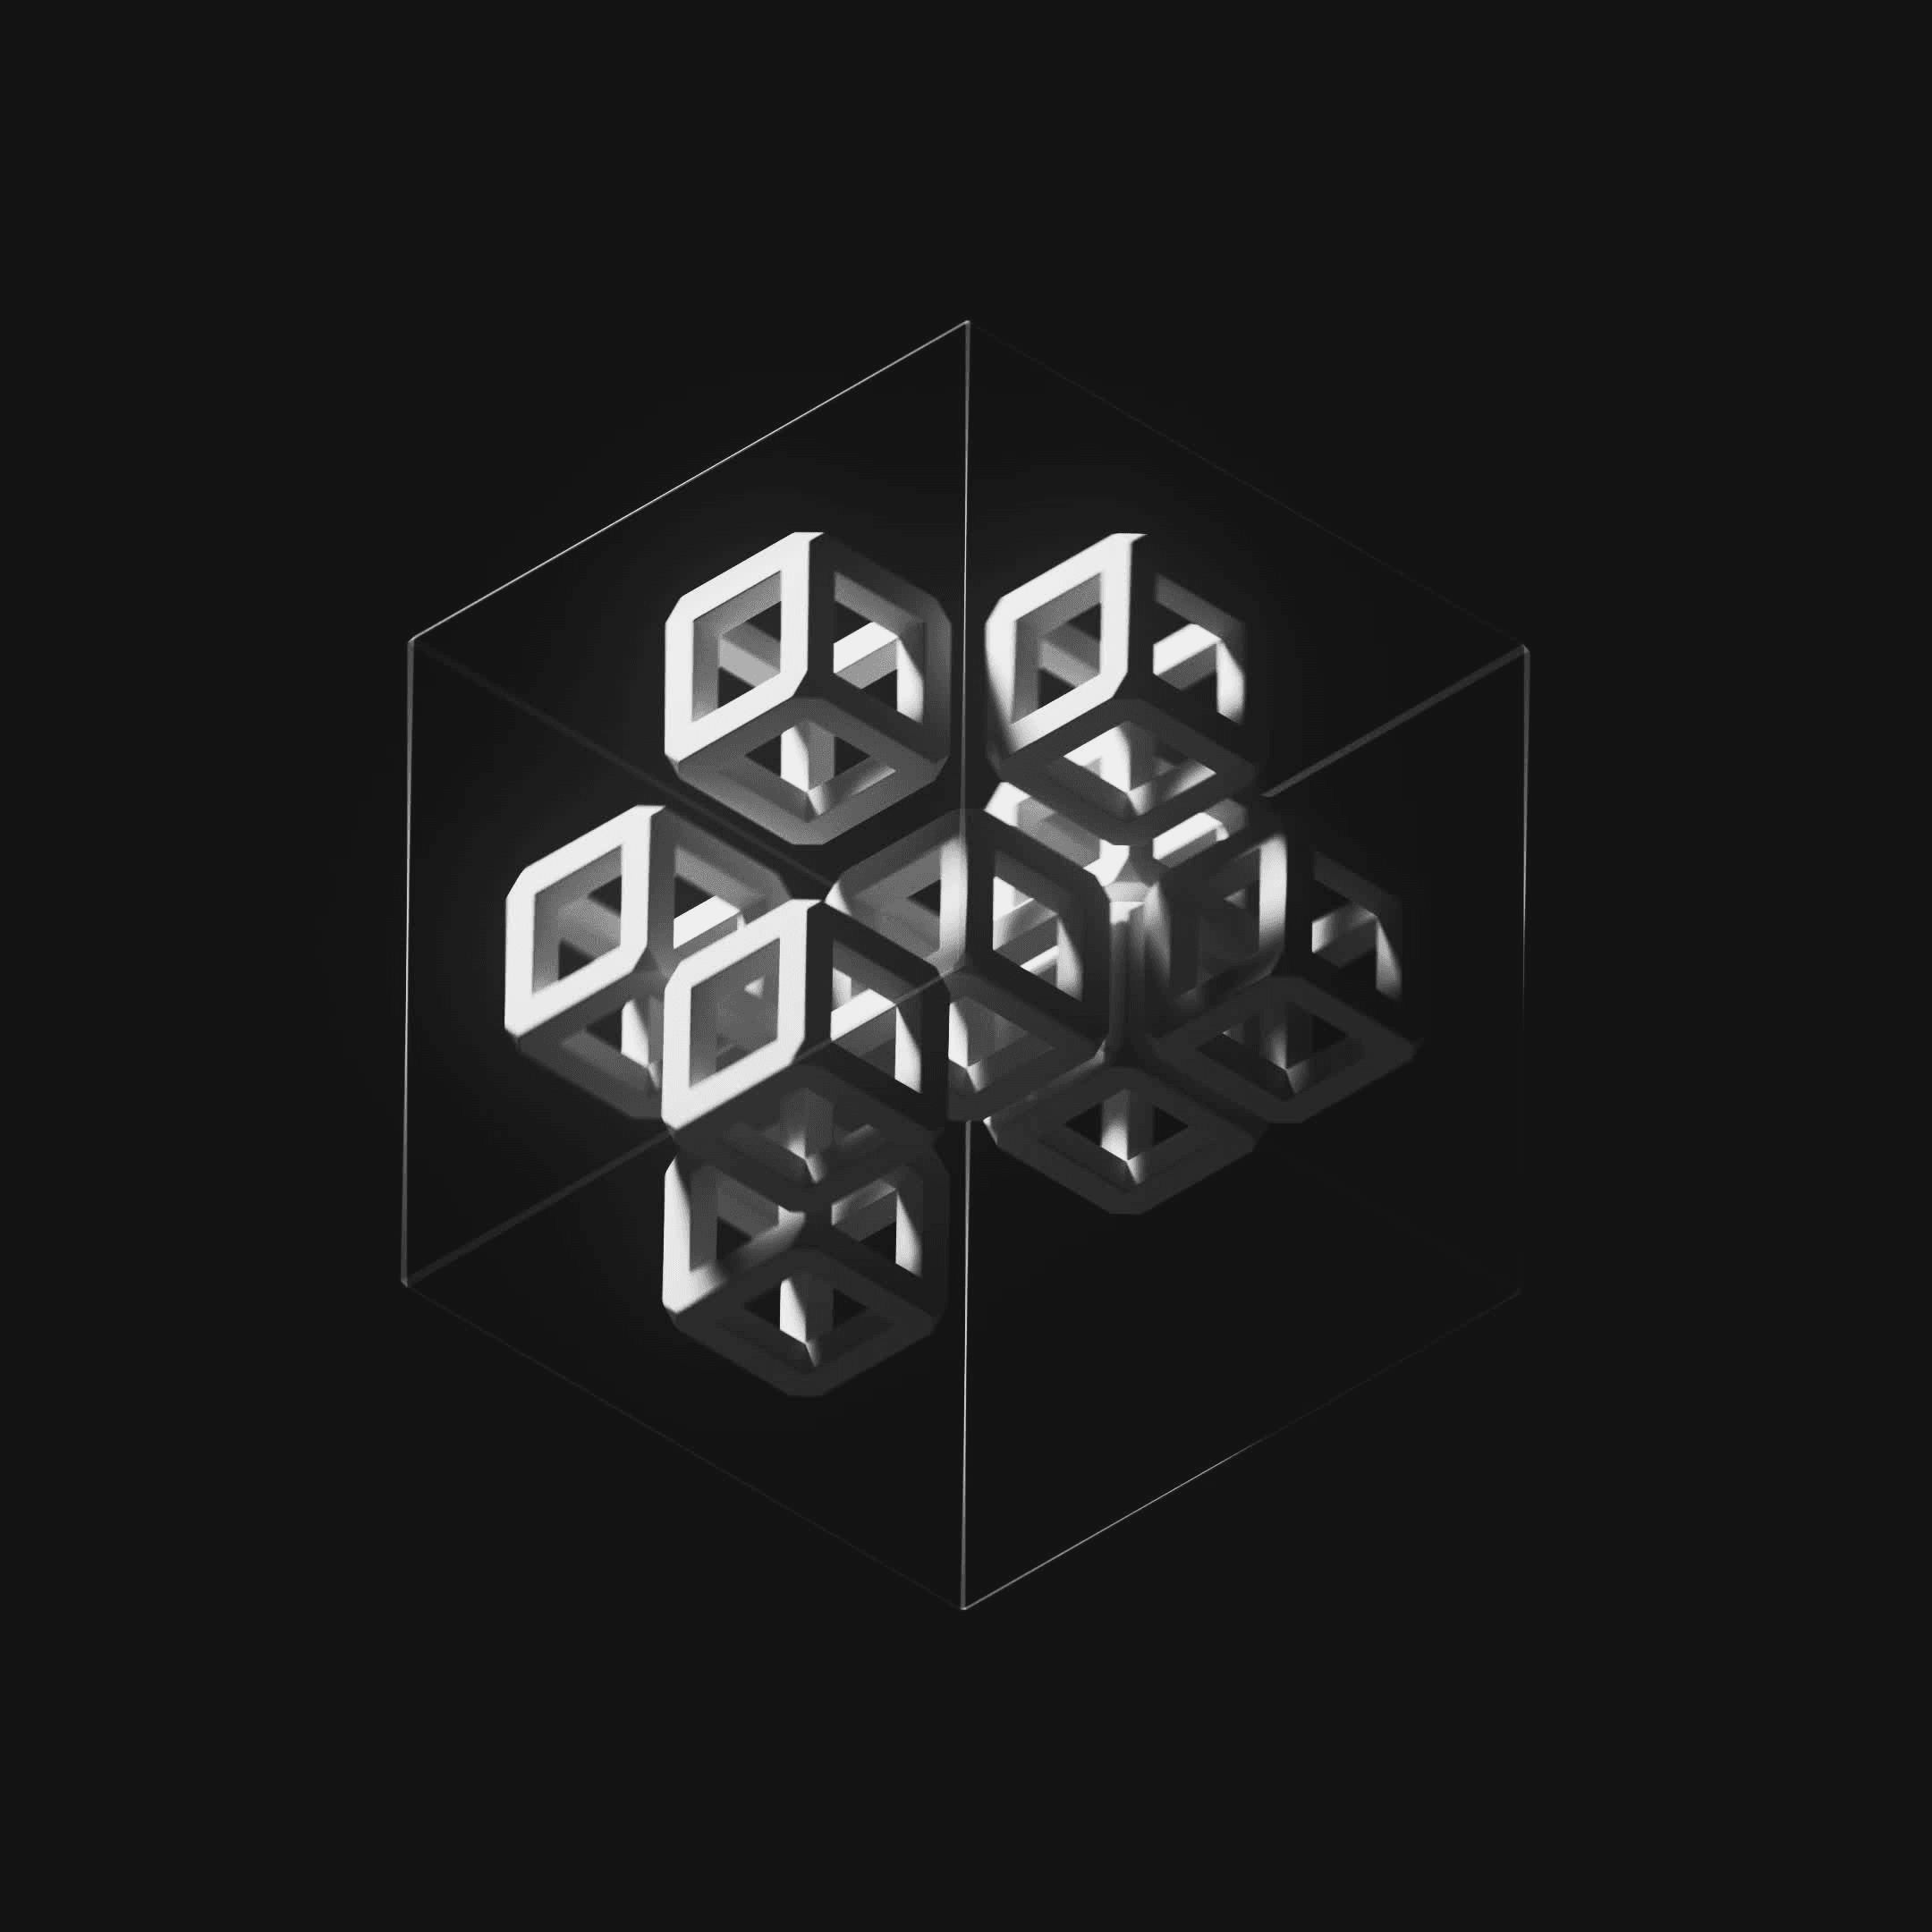 Ten Cubes #33/247